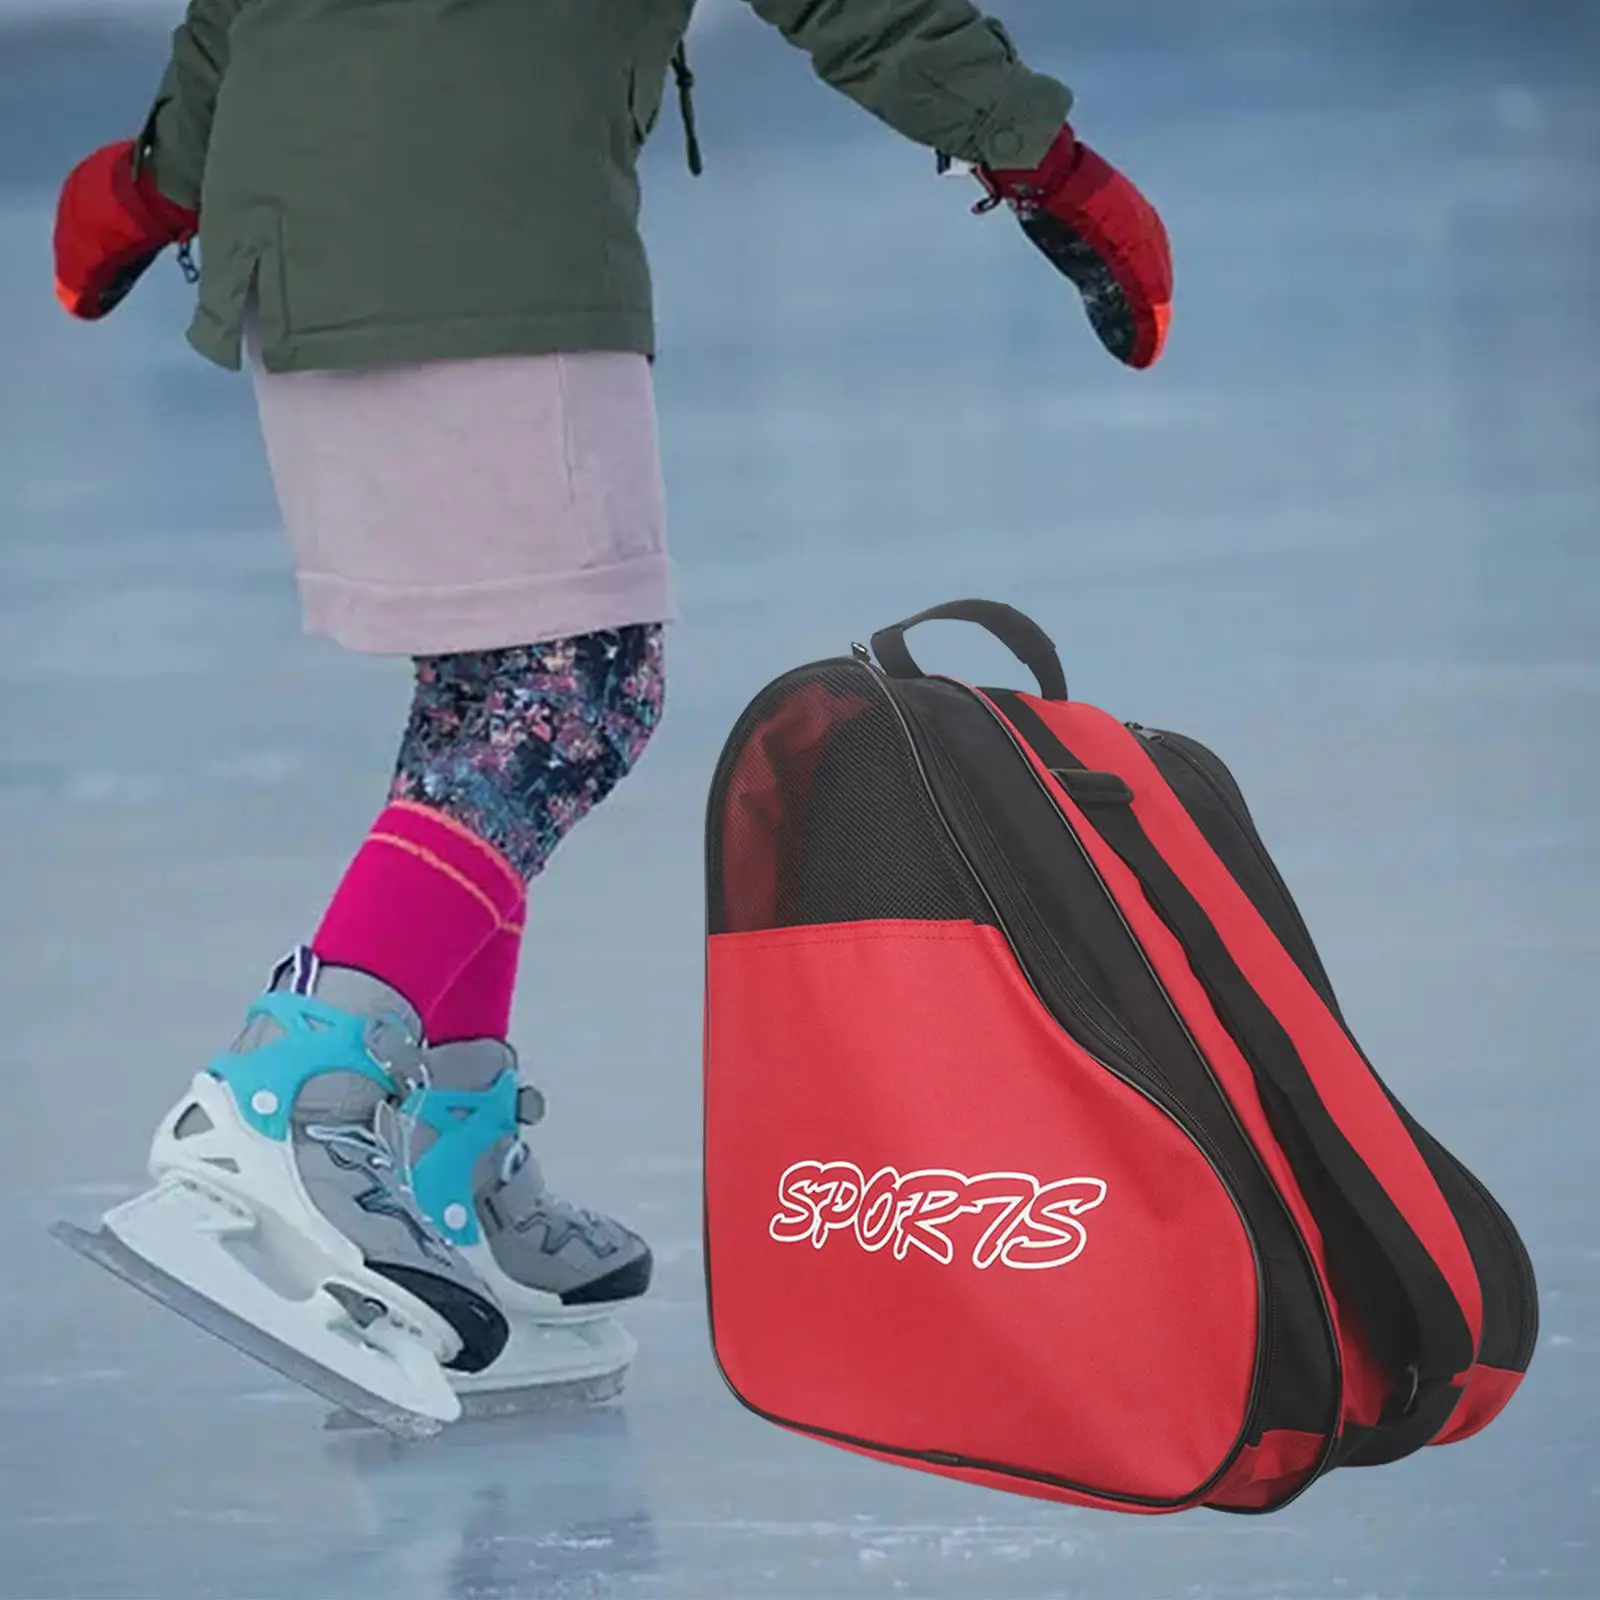 Skating Shoes Bag Skates Storage Bag Large Capacity Breathable Handbags Roller Skates Bag for Sports Outdoor Kids Boys Children